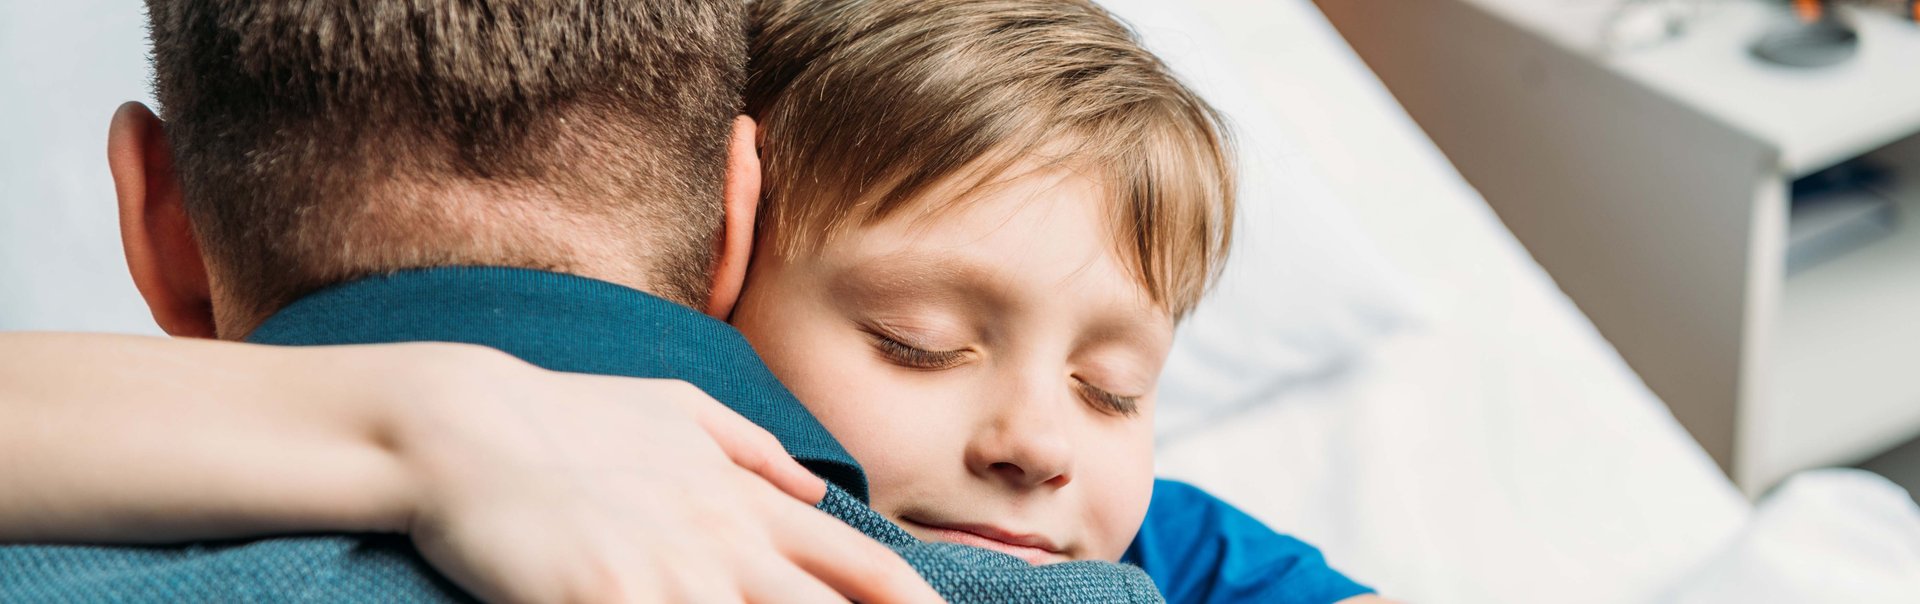 Junge im Krankenhaus umarmt seinen Vater auf dem Krankenbett.